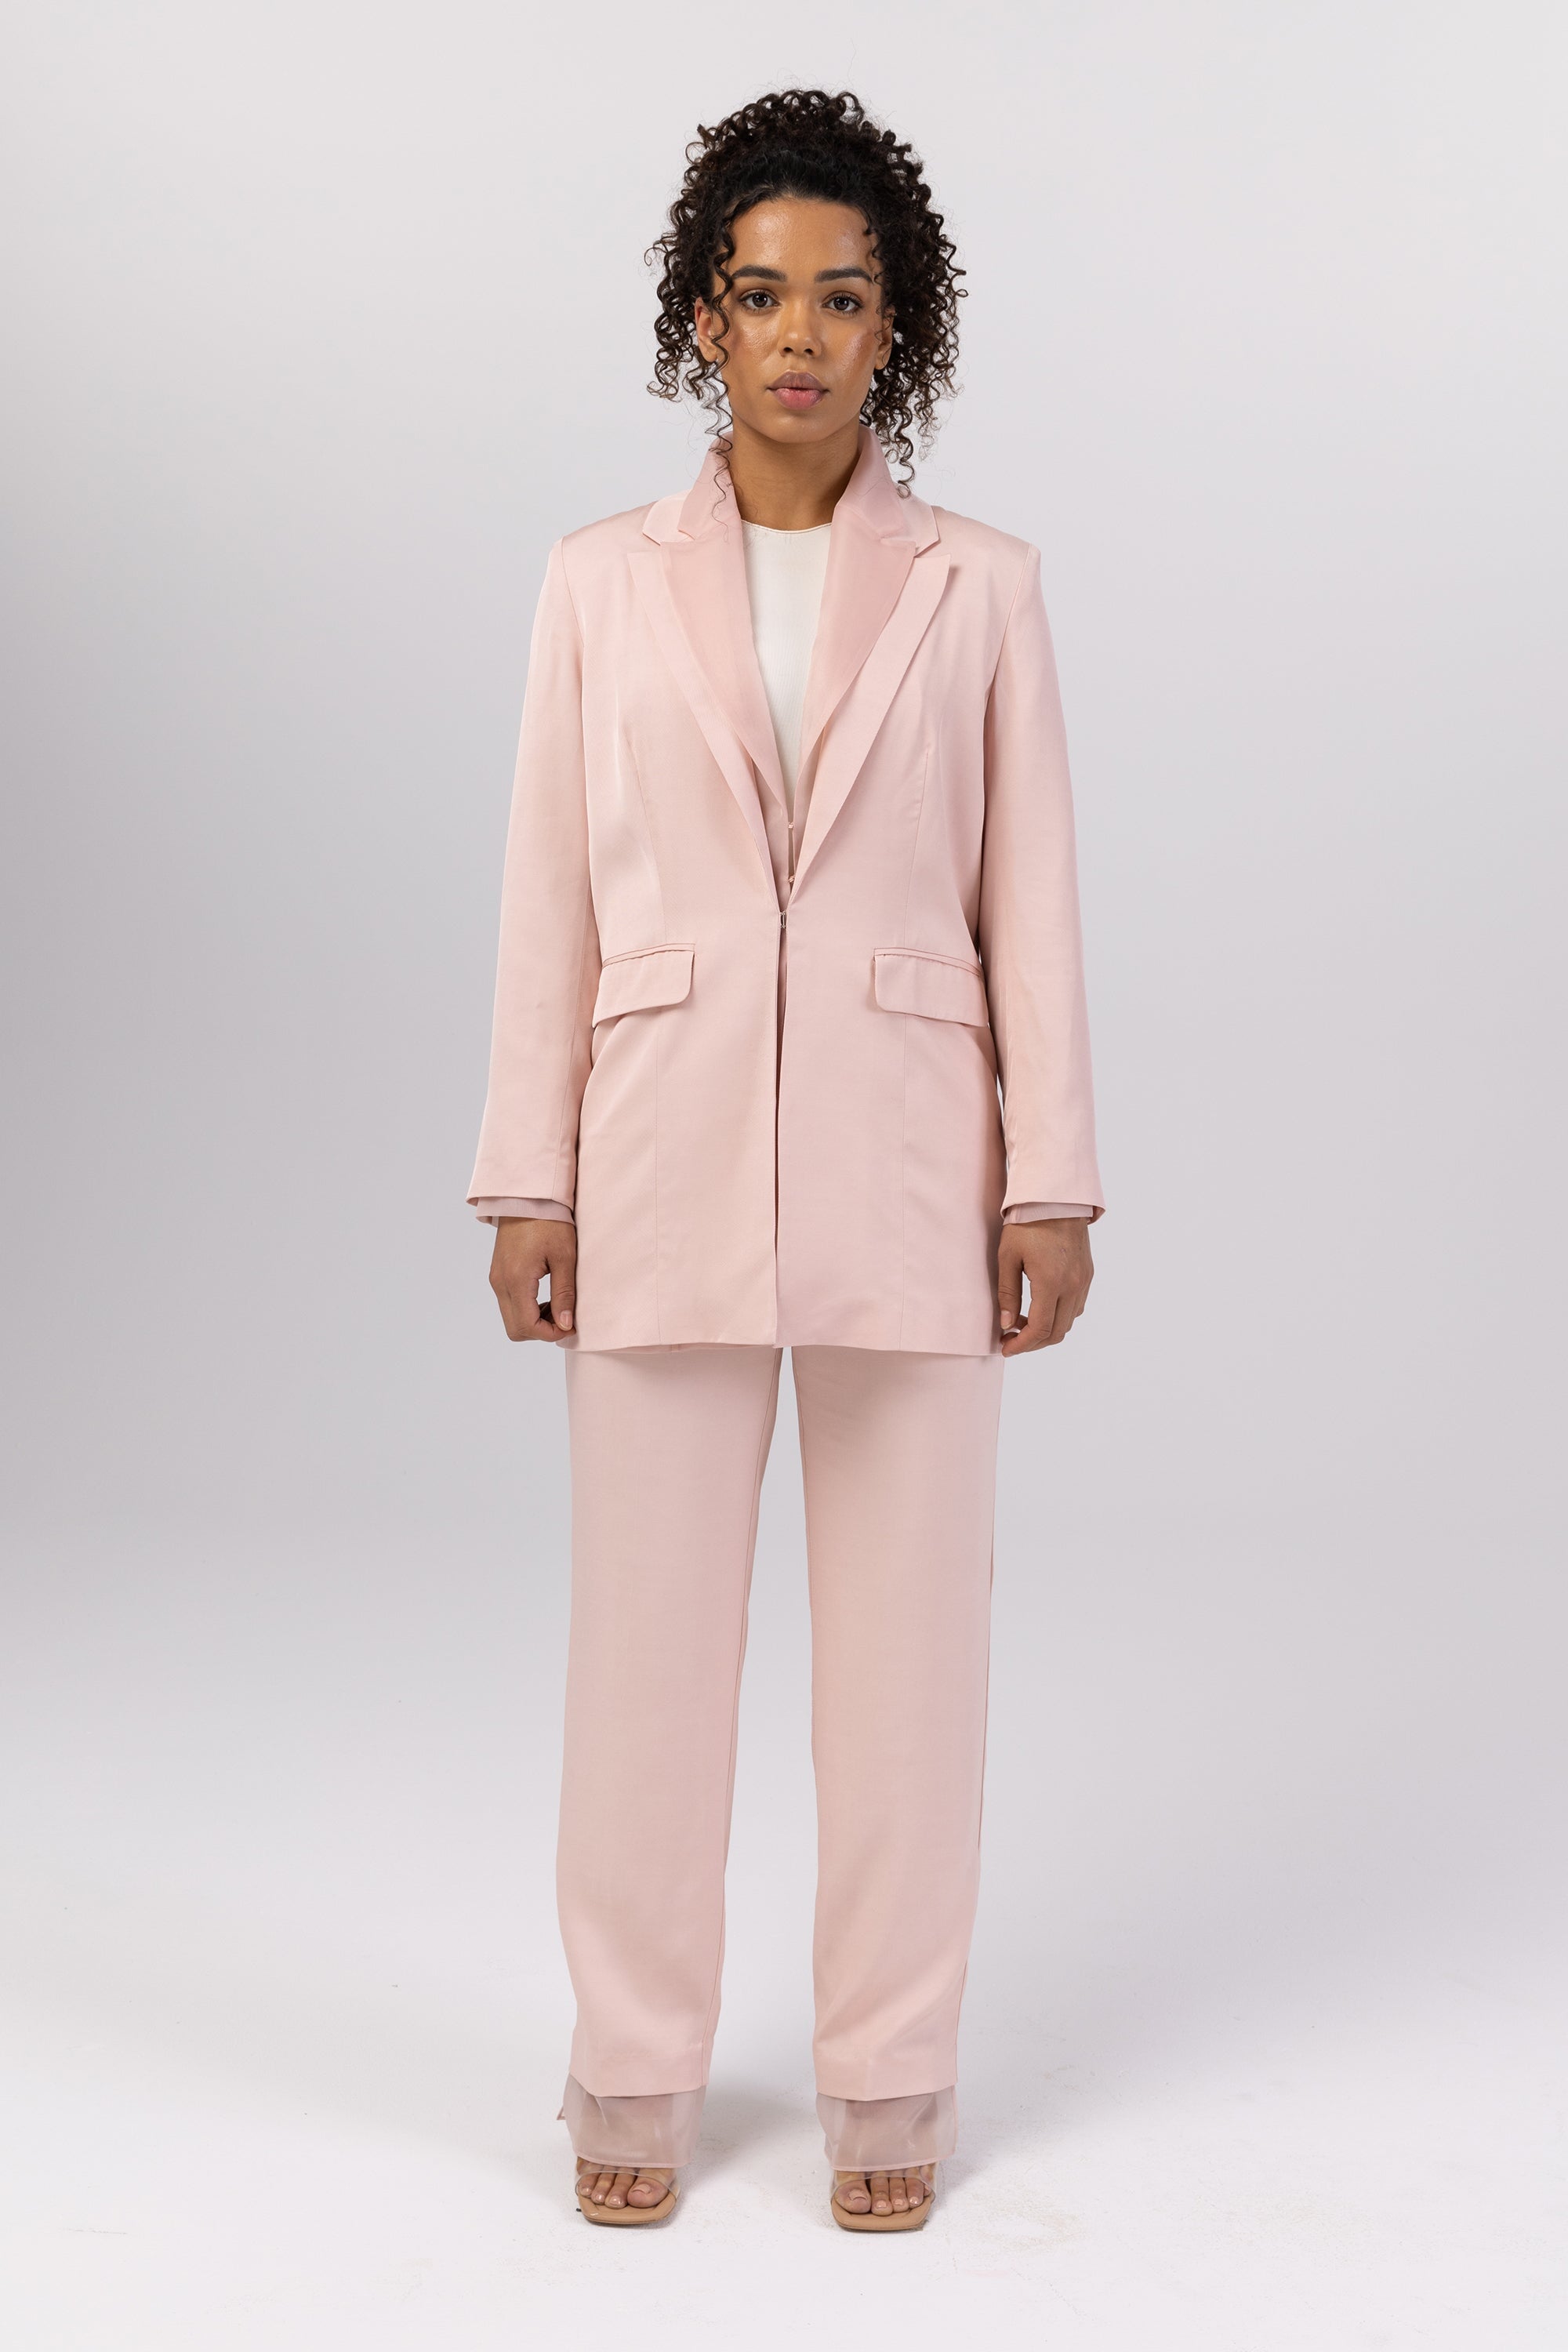 Dusty Pink Pantsuit for Women, Pinky Blazer Trouser Suit for Women, Office  Wear for Women, Women's Formal Wear -  Finland